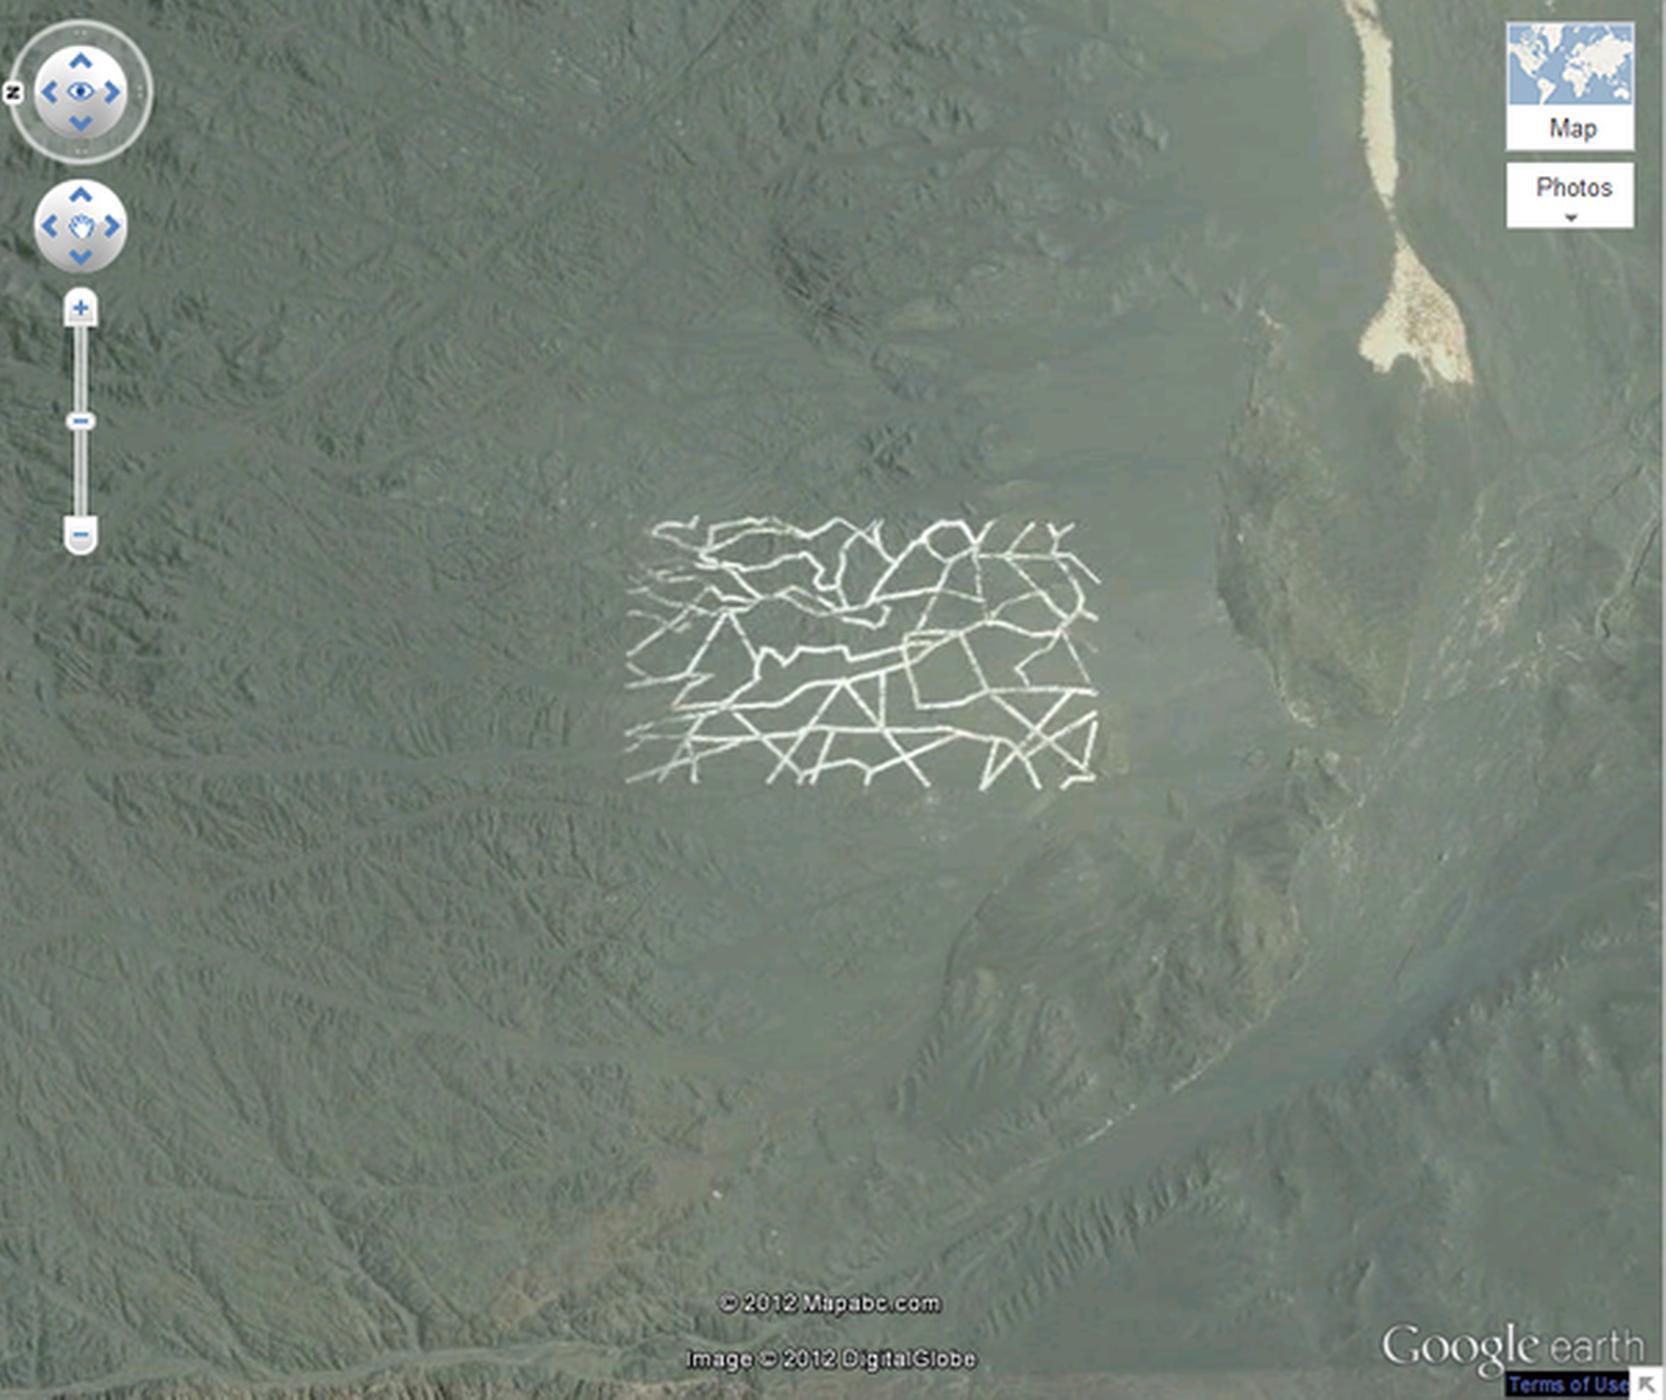 24 ảnh đảm bảo độc lạ từ Google Earth - Ảnh 19.